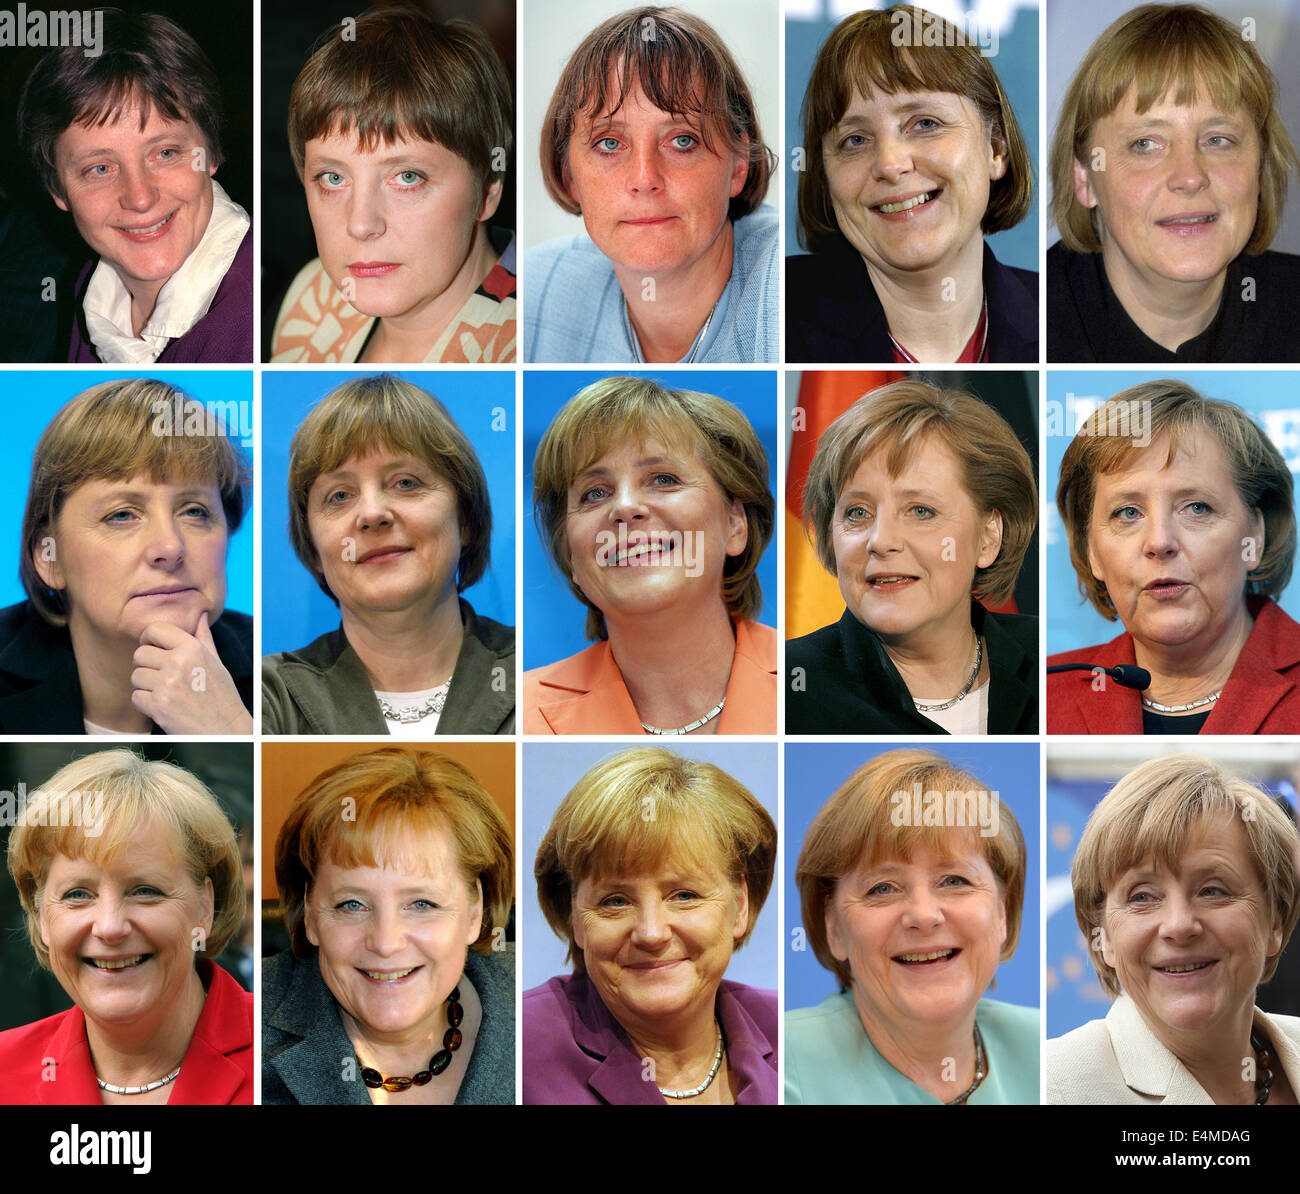 COMBO - una combinazione di foto fatta off archivio foto dagli anni 1991 fino a 2014 mostra Angela Merkel in momenti diversi della sua carriera politica dopo la riunificazione tedesca. (TOP-L-R) 1991, 1994, 1997, 2000, 2002, 2003; (medio-L-R) 2003, 2004, 2005, 2006, 2007; (FONDO L-R) 2008, 2010, 2011, 2013 e 2014. Merkel spire 60 il 17 luglio 2014. Foto: dpa Foto Stock